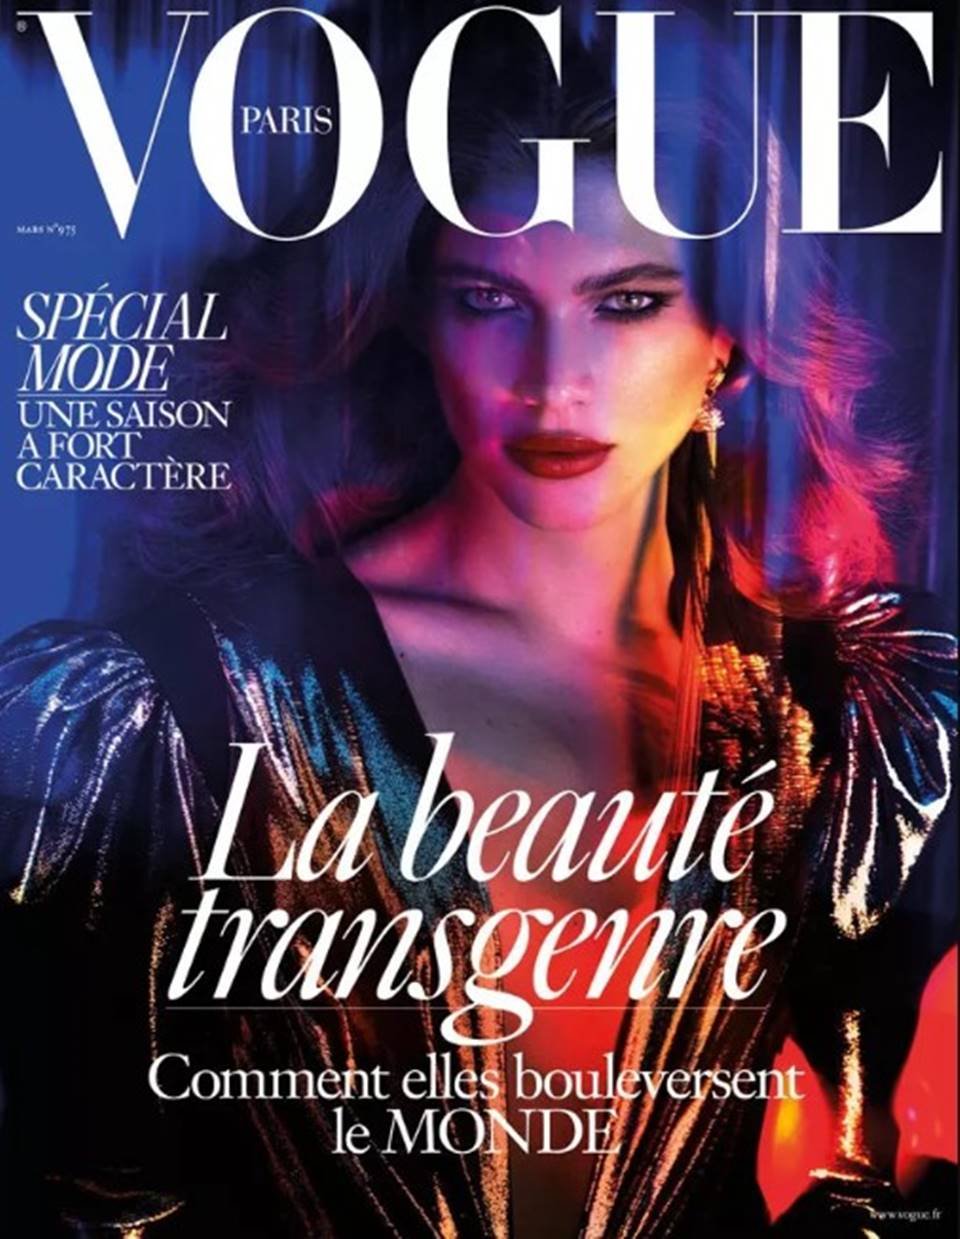 Reprodução/Vogue Paris